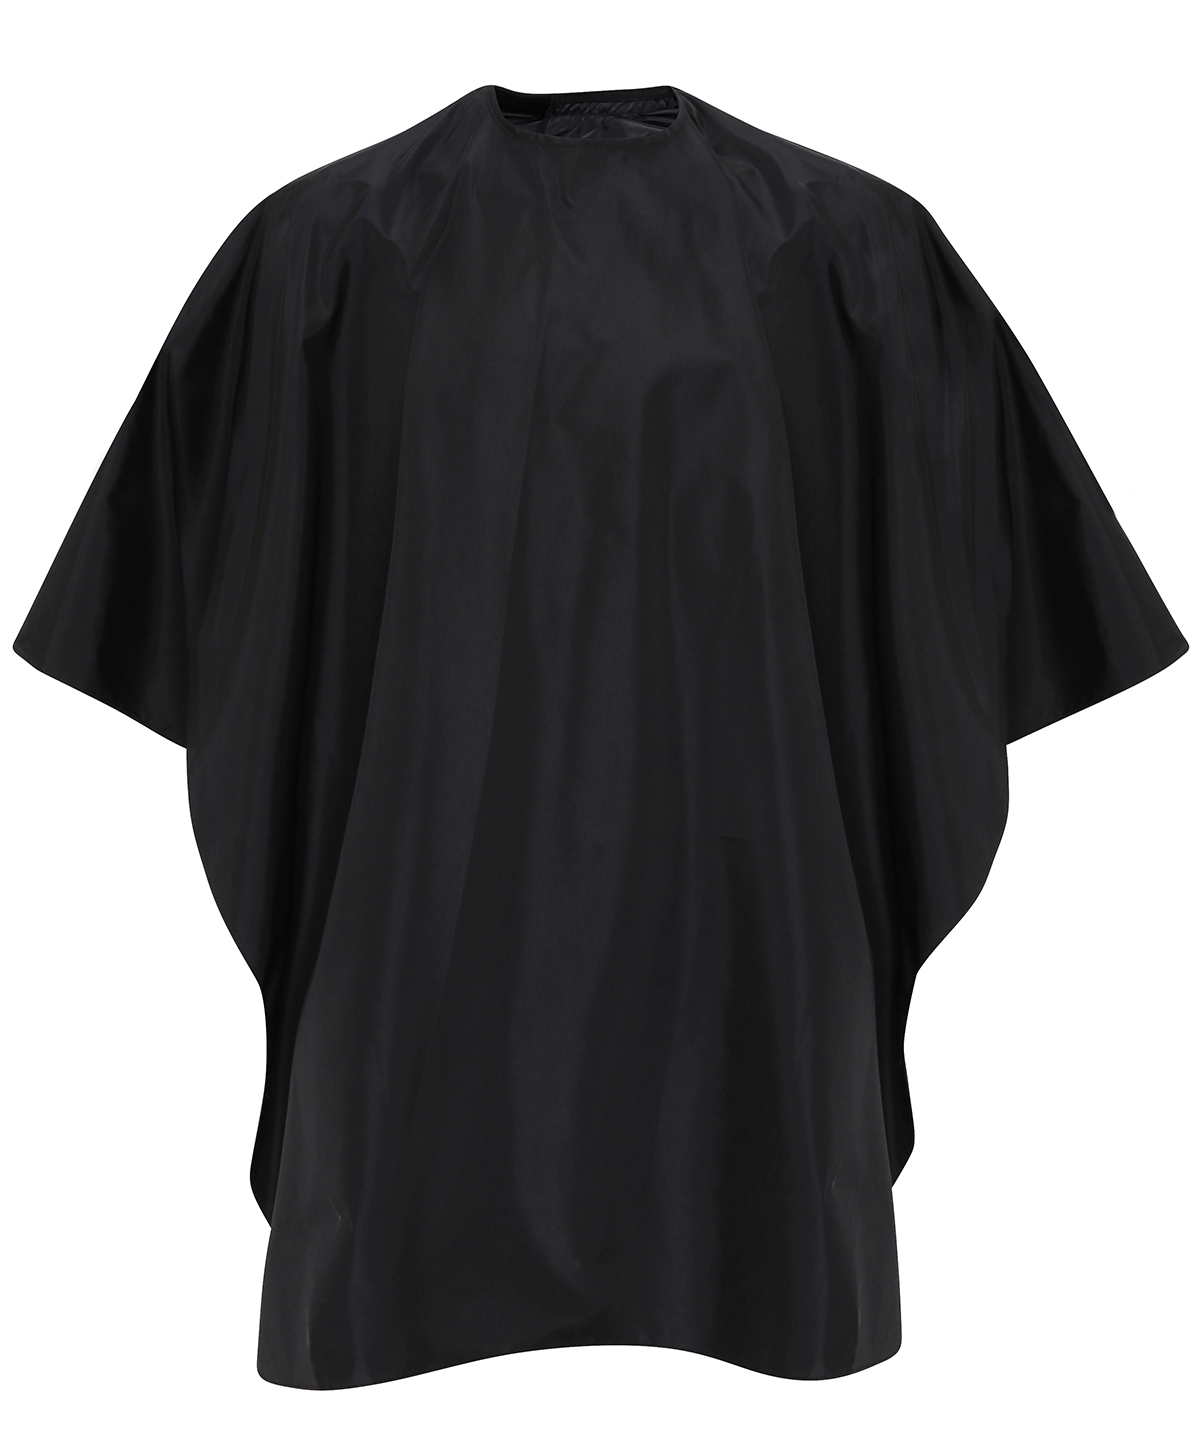 Waterproof Salon Gown Black Size One Size